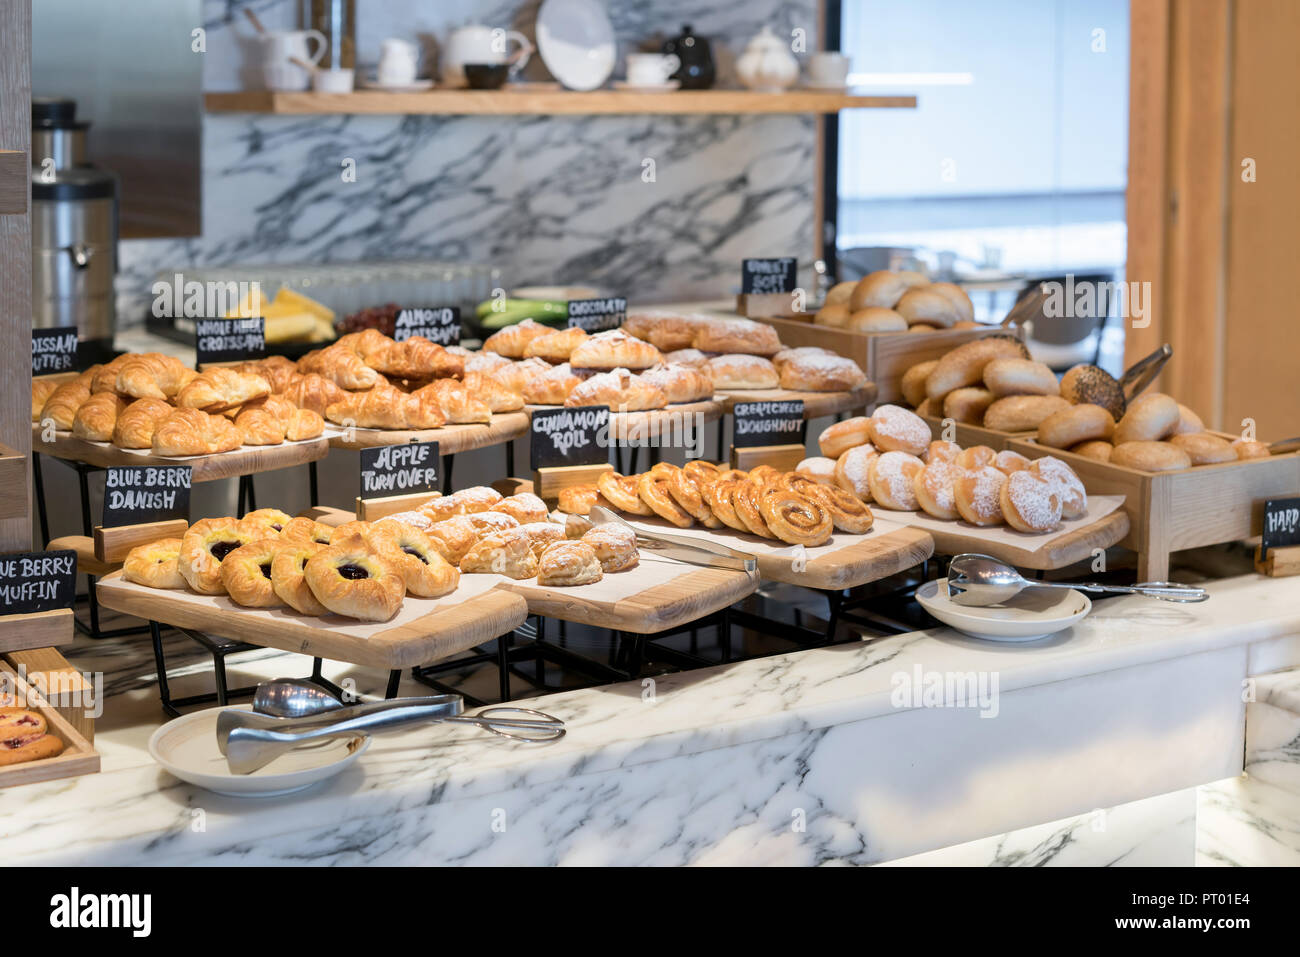 Frühstück Linien unterschiedlicher Geschmack danishs, Brötchen und Muffins in der holztabletts im Hotel Restaurant Stockfoto